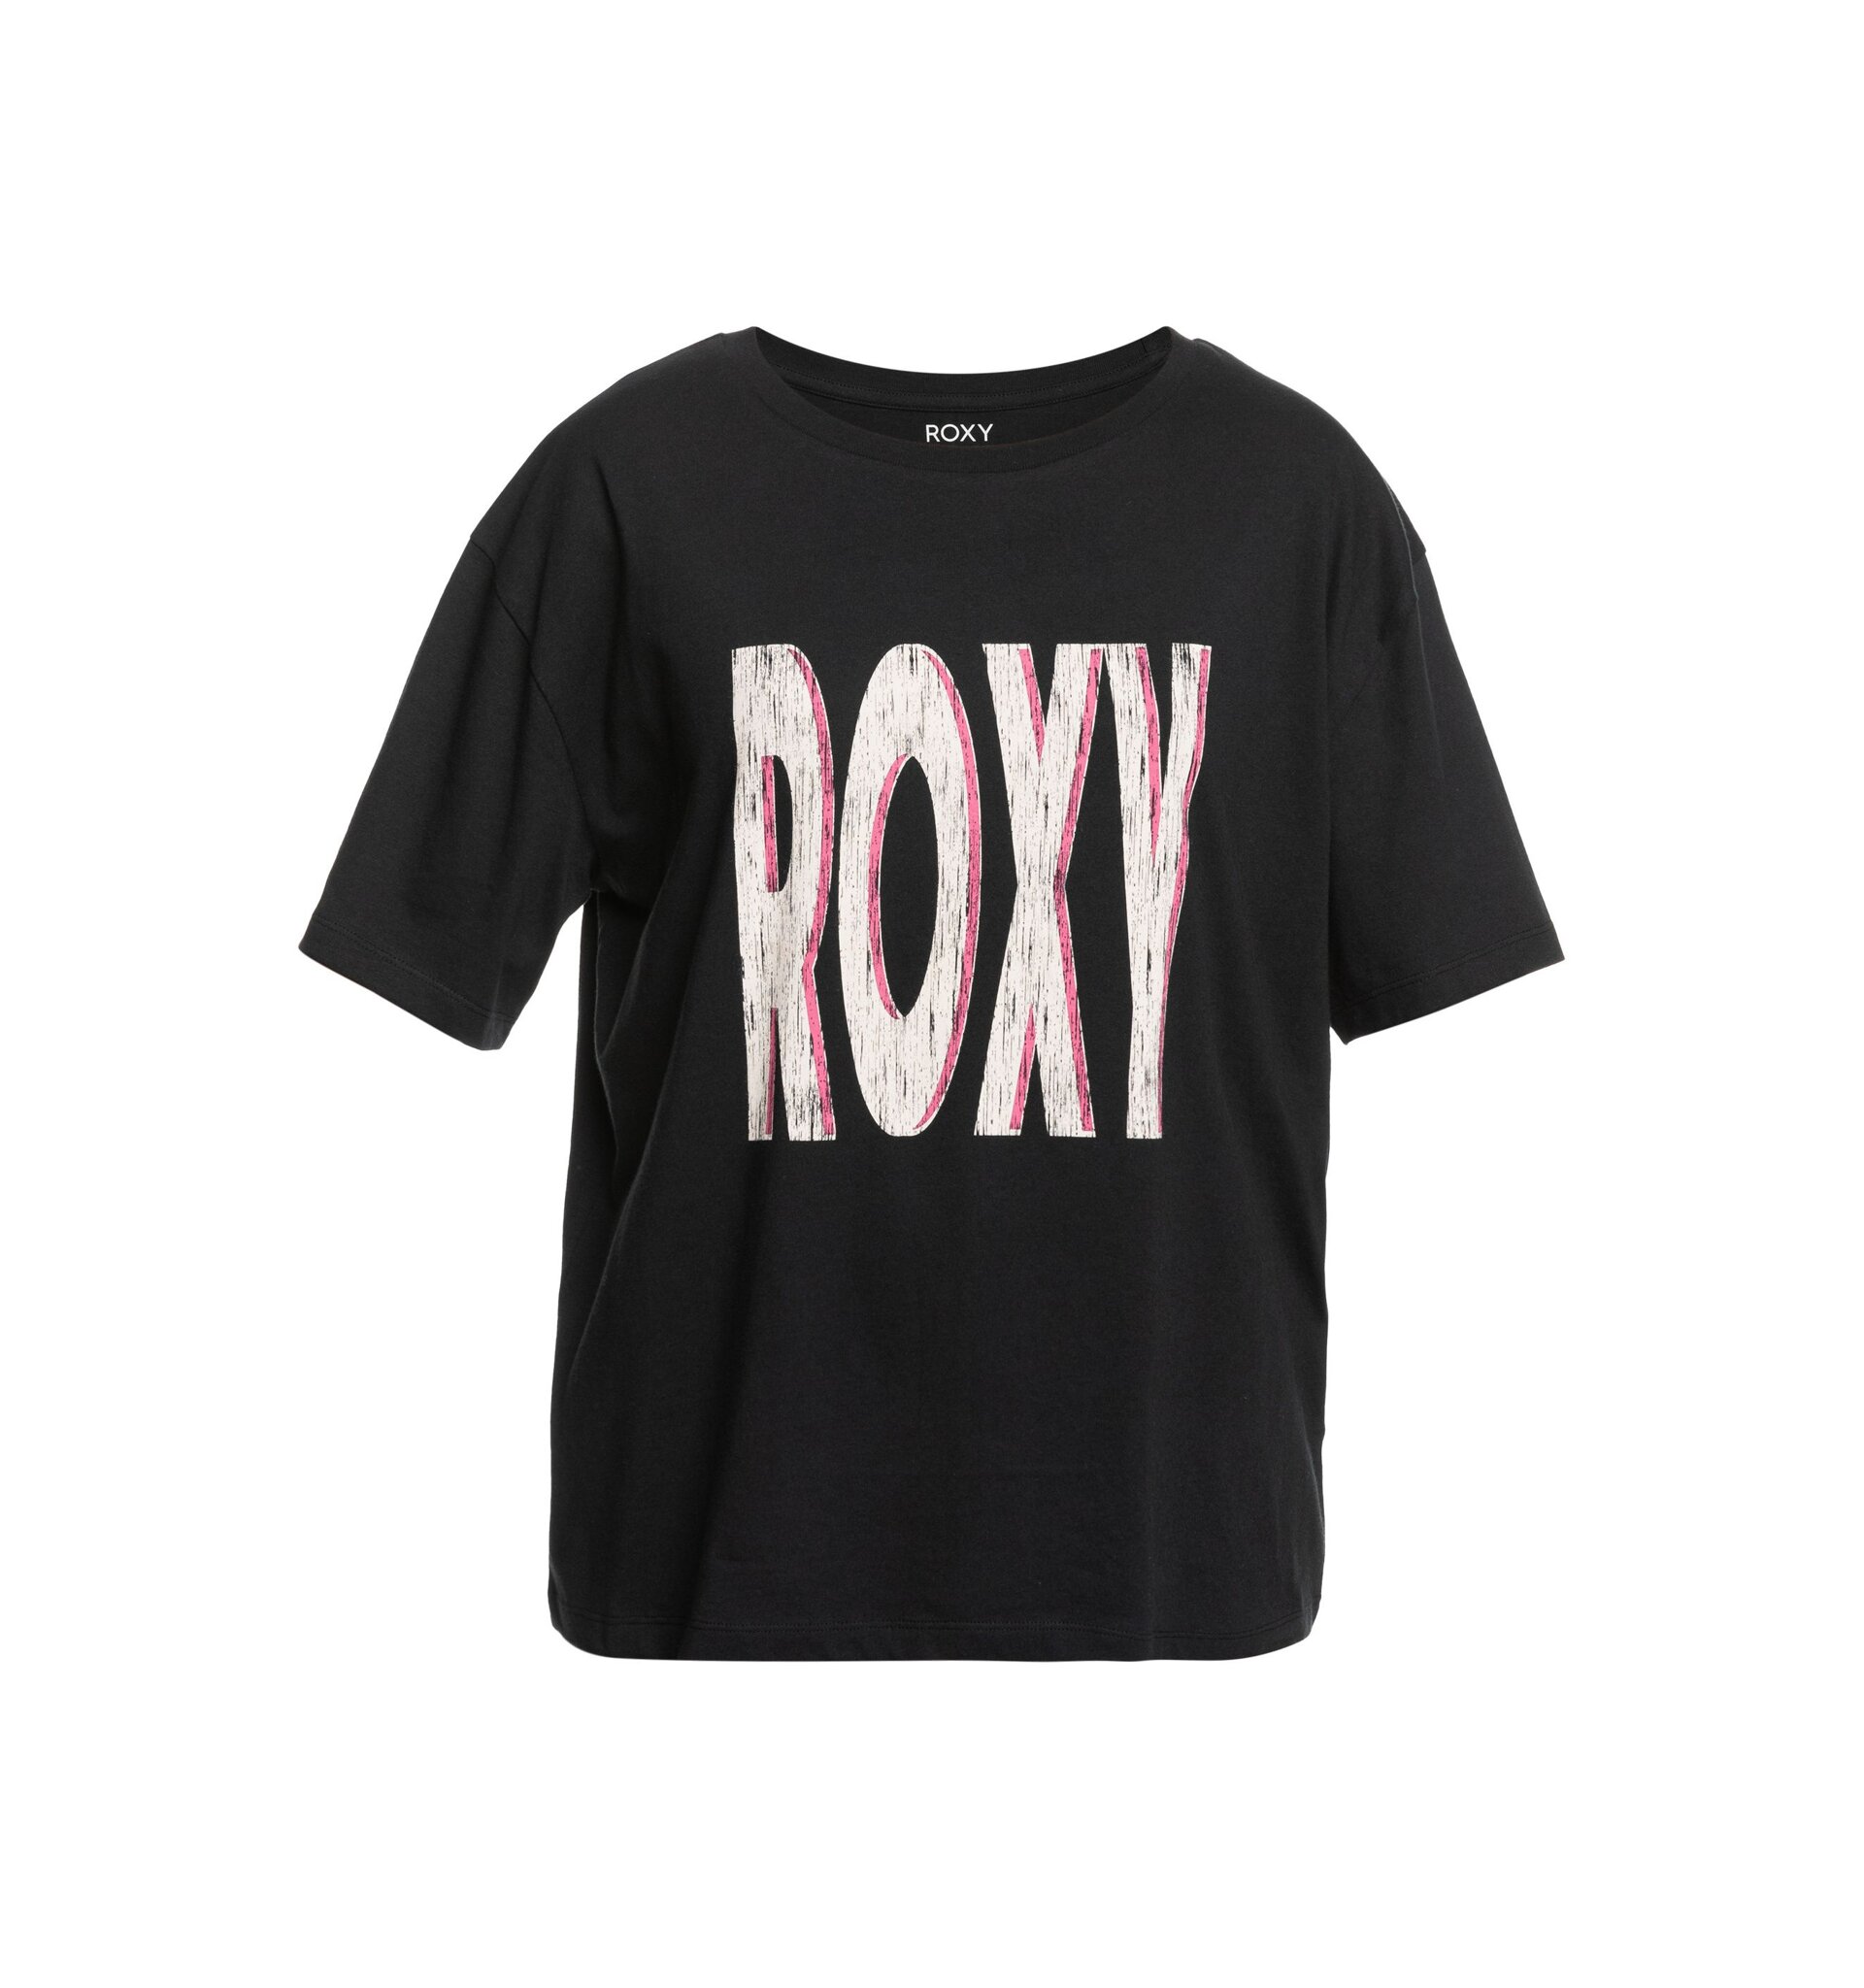 Dámské tričko Roxy Sand Under Sky, Anthracite | Meatfly